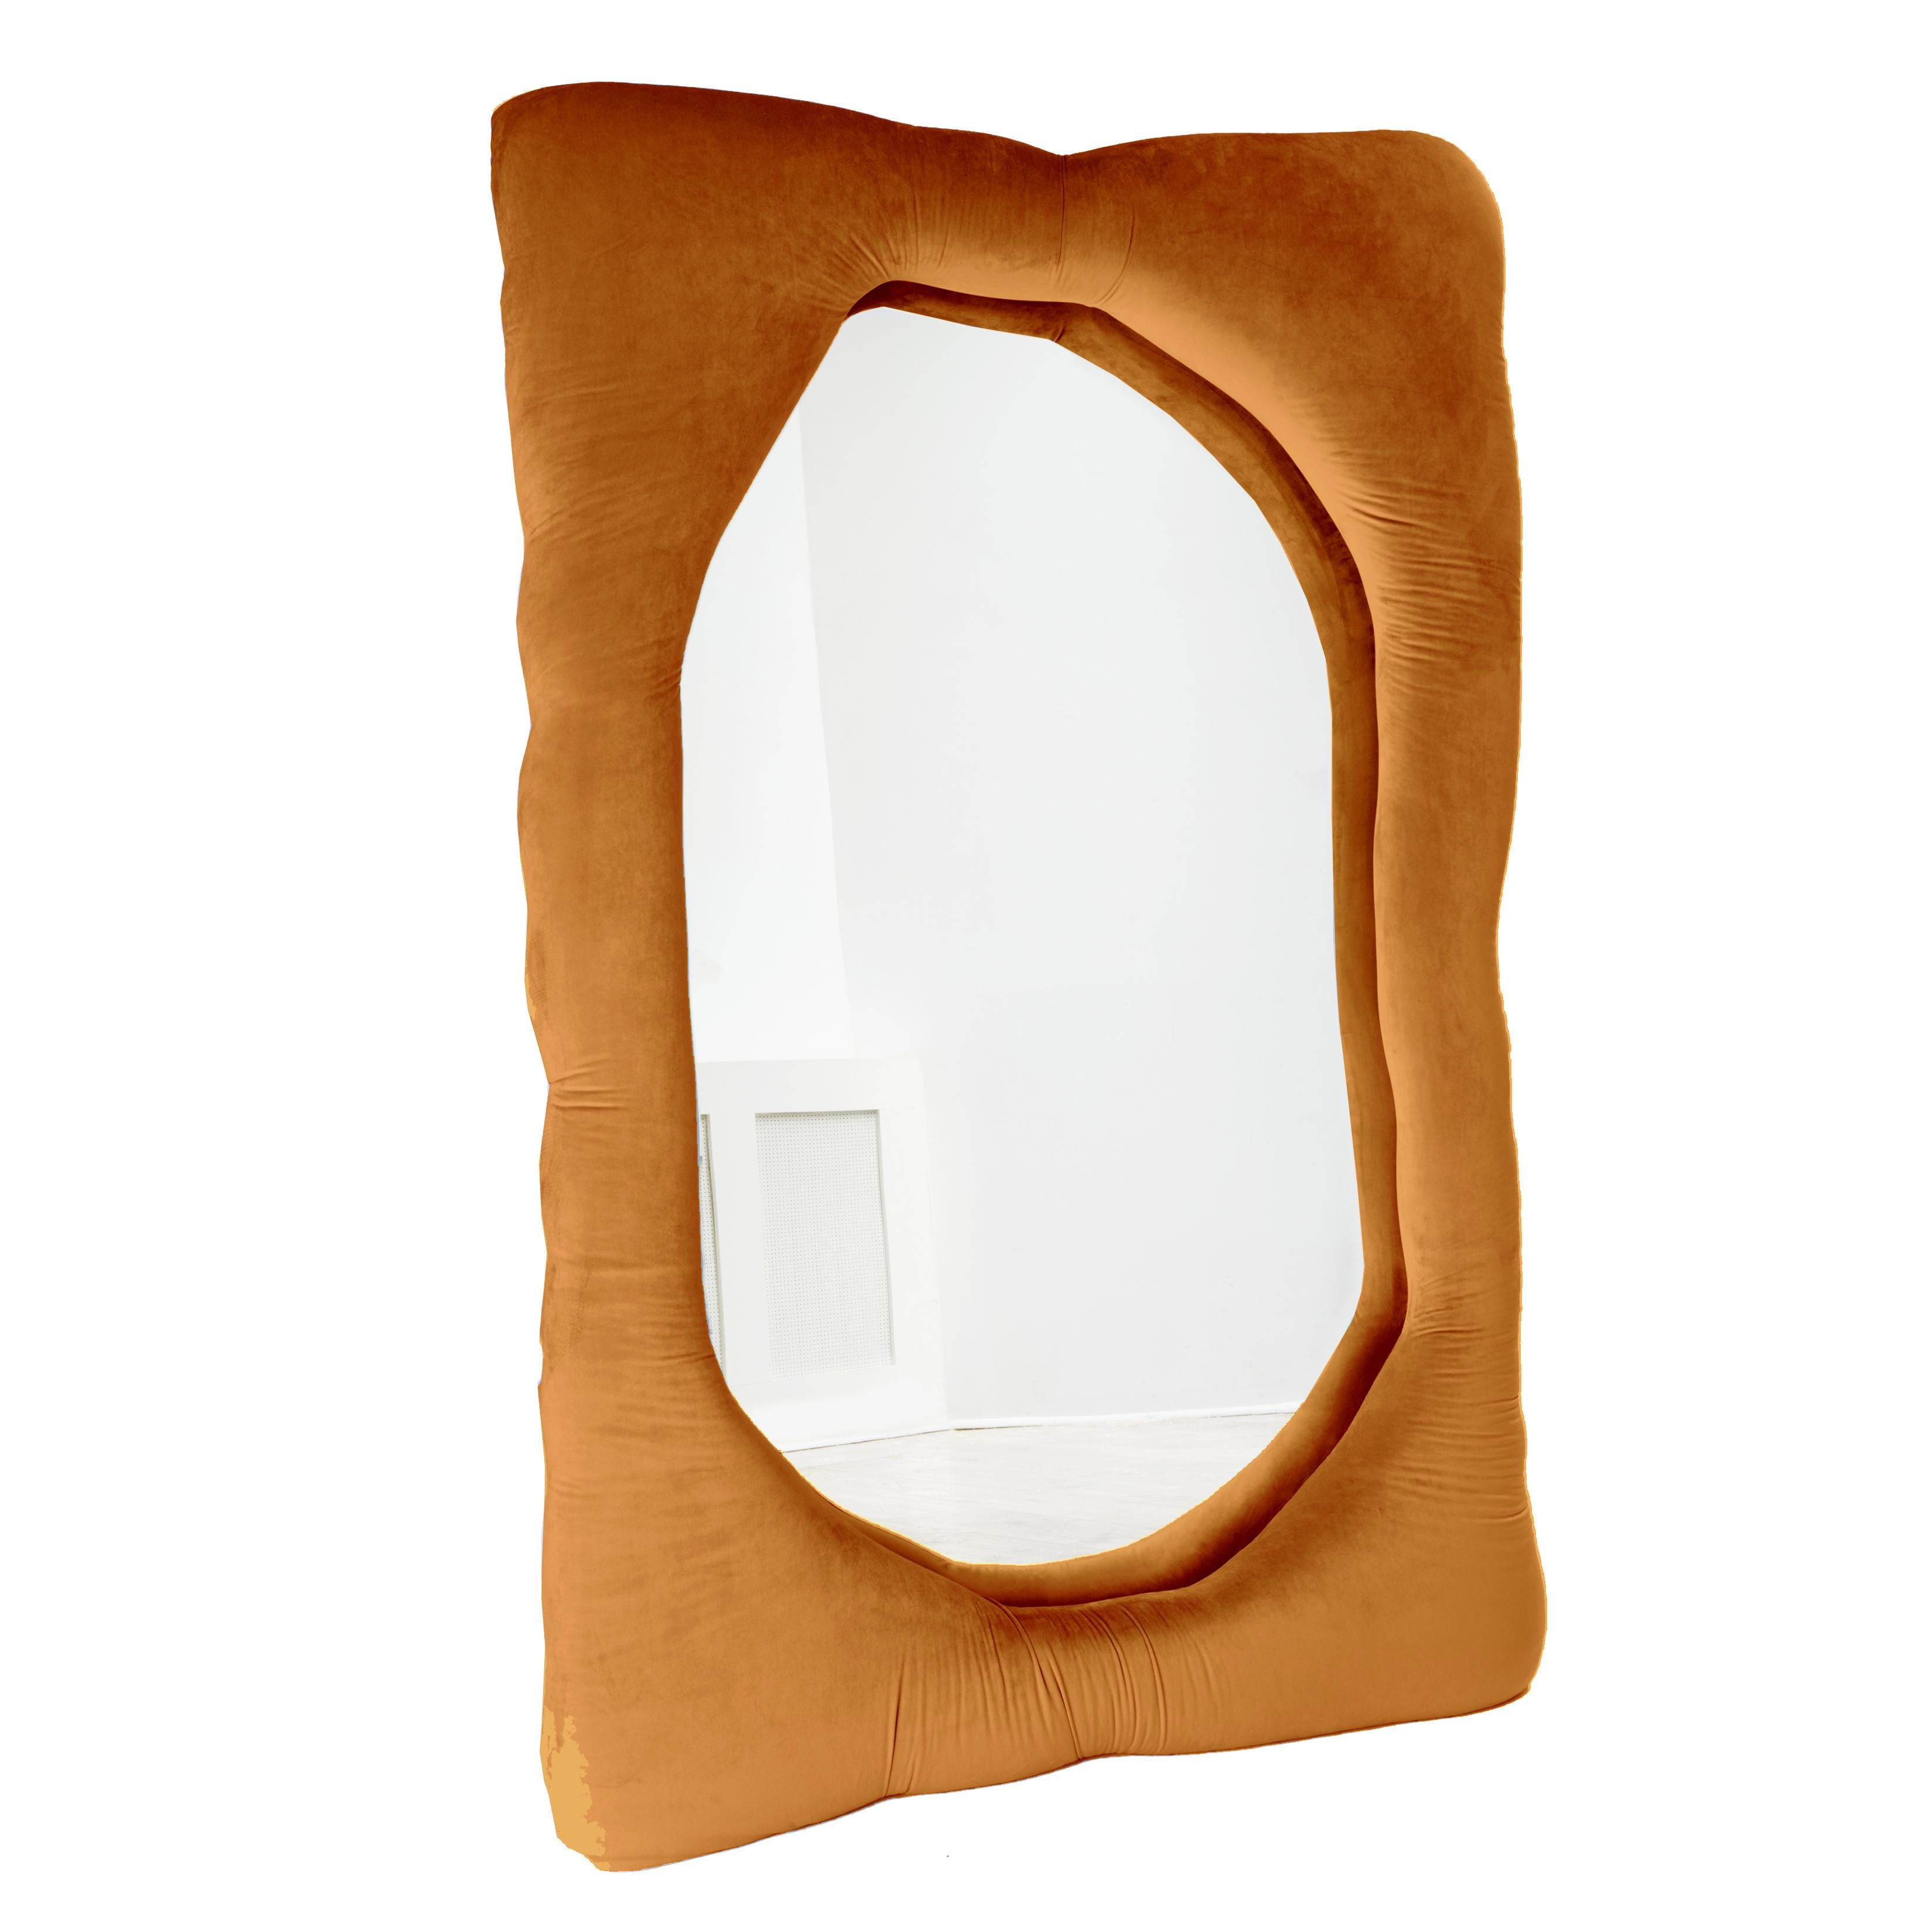 Biomorpher Spiegel von Brandi Howe

Samtstoff, Glas, Holz

Abgebildet: 68 x 45 x 5 Zoll.

Dieser Spiegel ist in verschiedenen Farben, Stoffen und Größen anpassbar.

Andere Größe verfügbar: 60 x 15 x 5 Zoll.

Die Vorlaufzeit für diesen Artikel